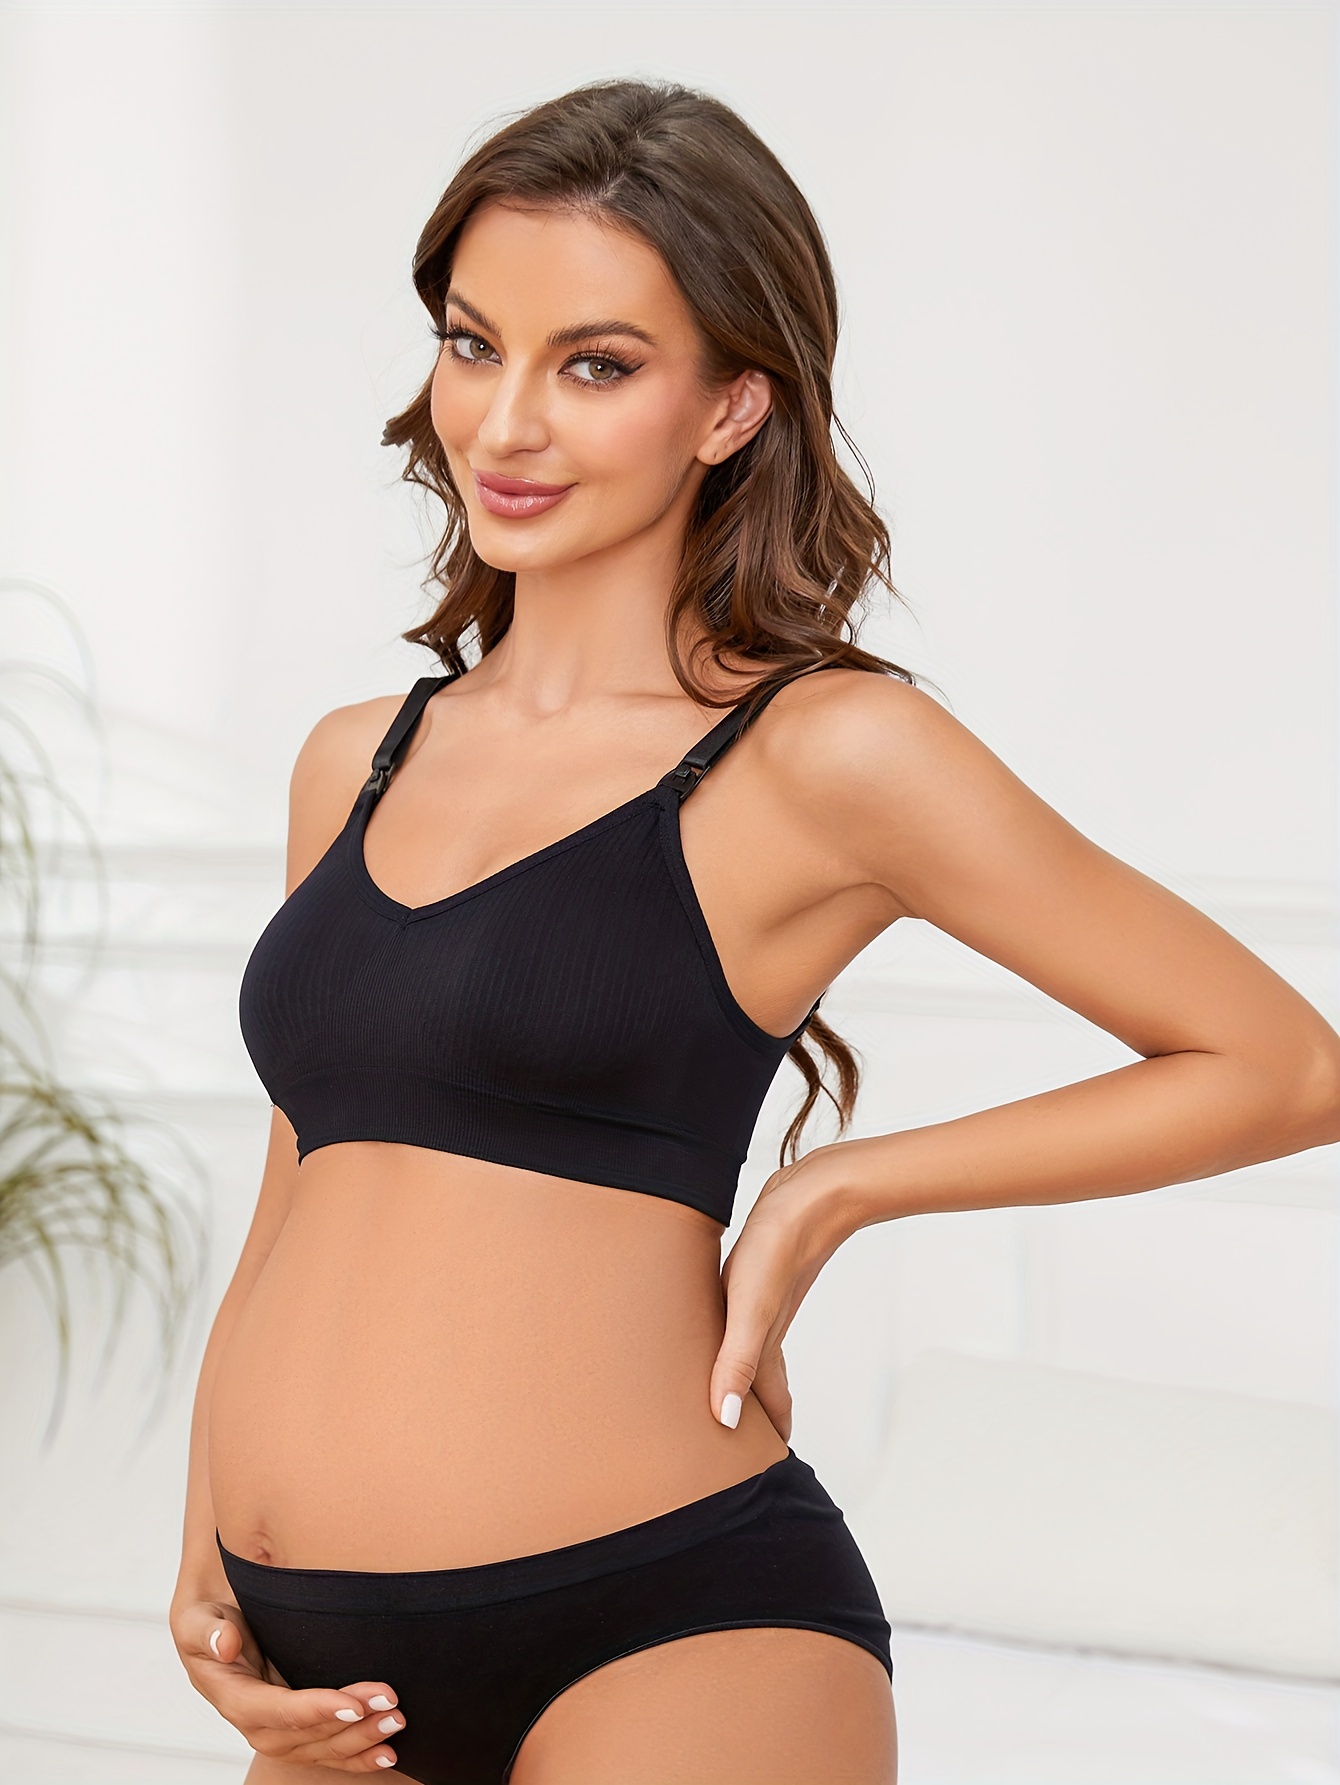 3PCS Pregnant Women's Plain Color Bra Maternity Nursing Bras Vest